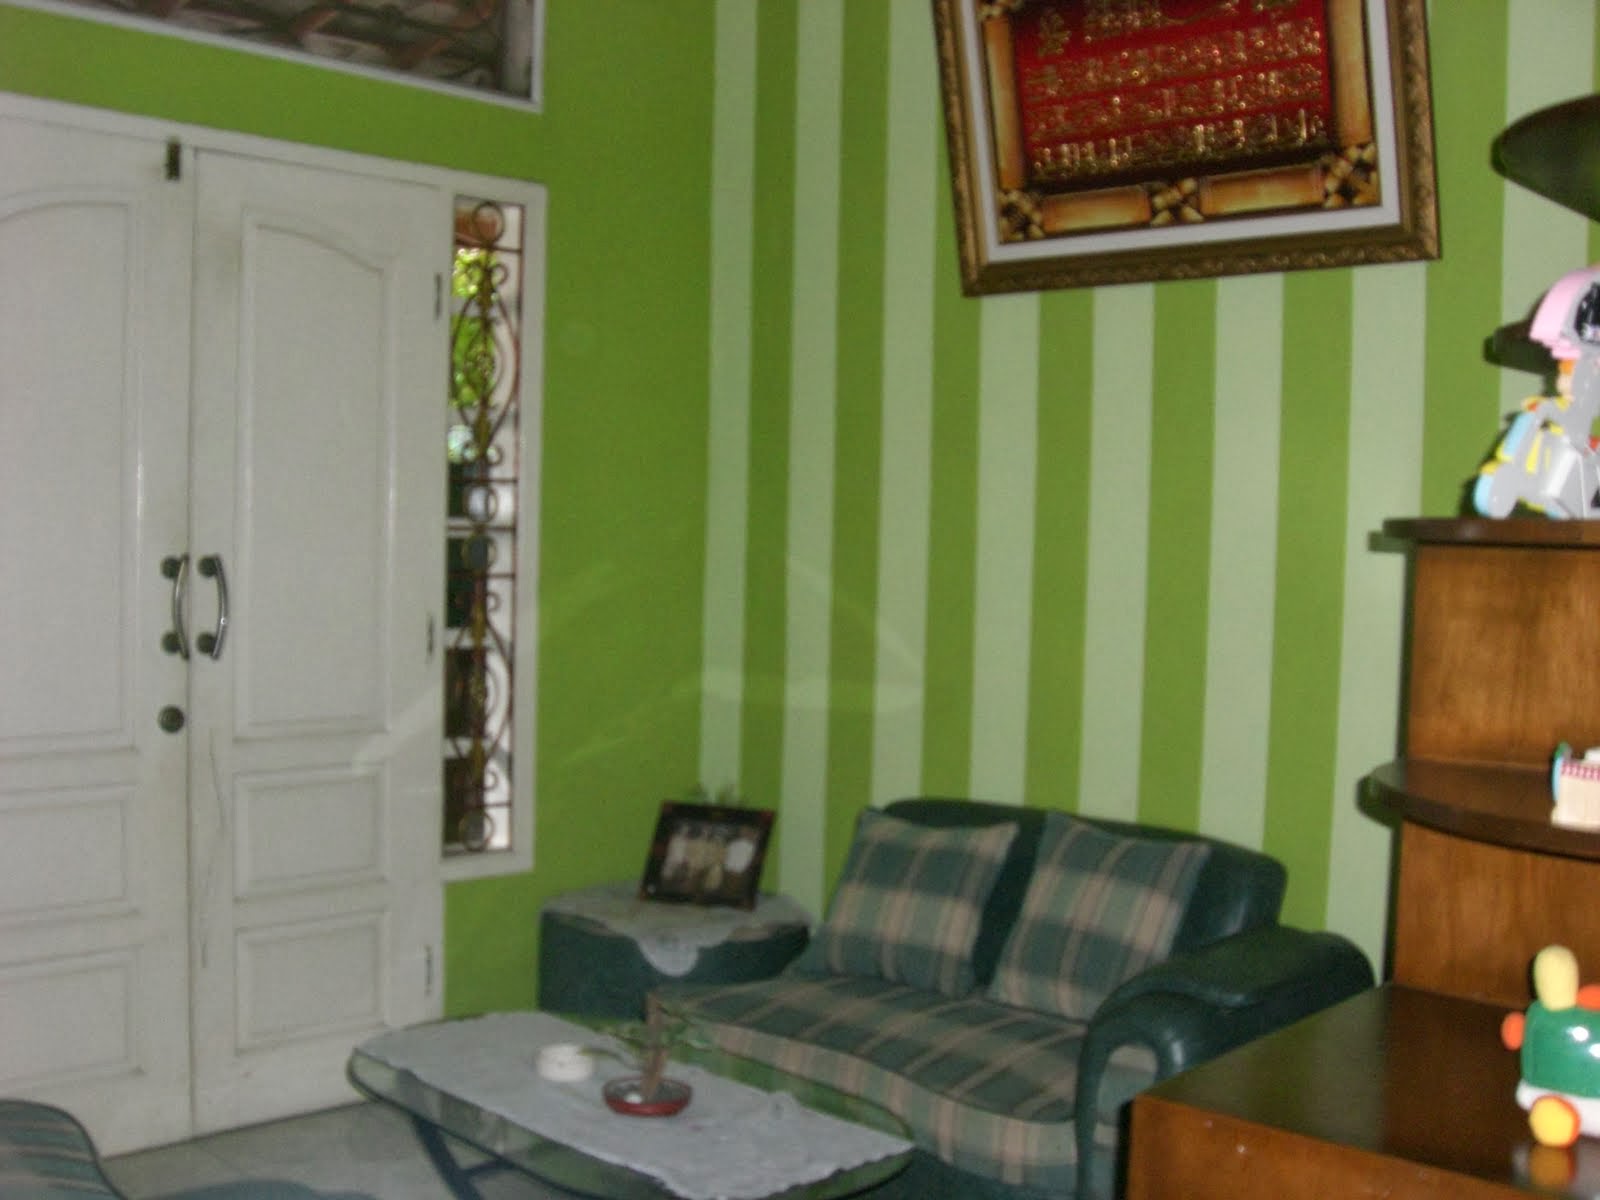 motif wallpaper ruang keluarga,room,property,furniture,living room,green